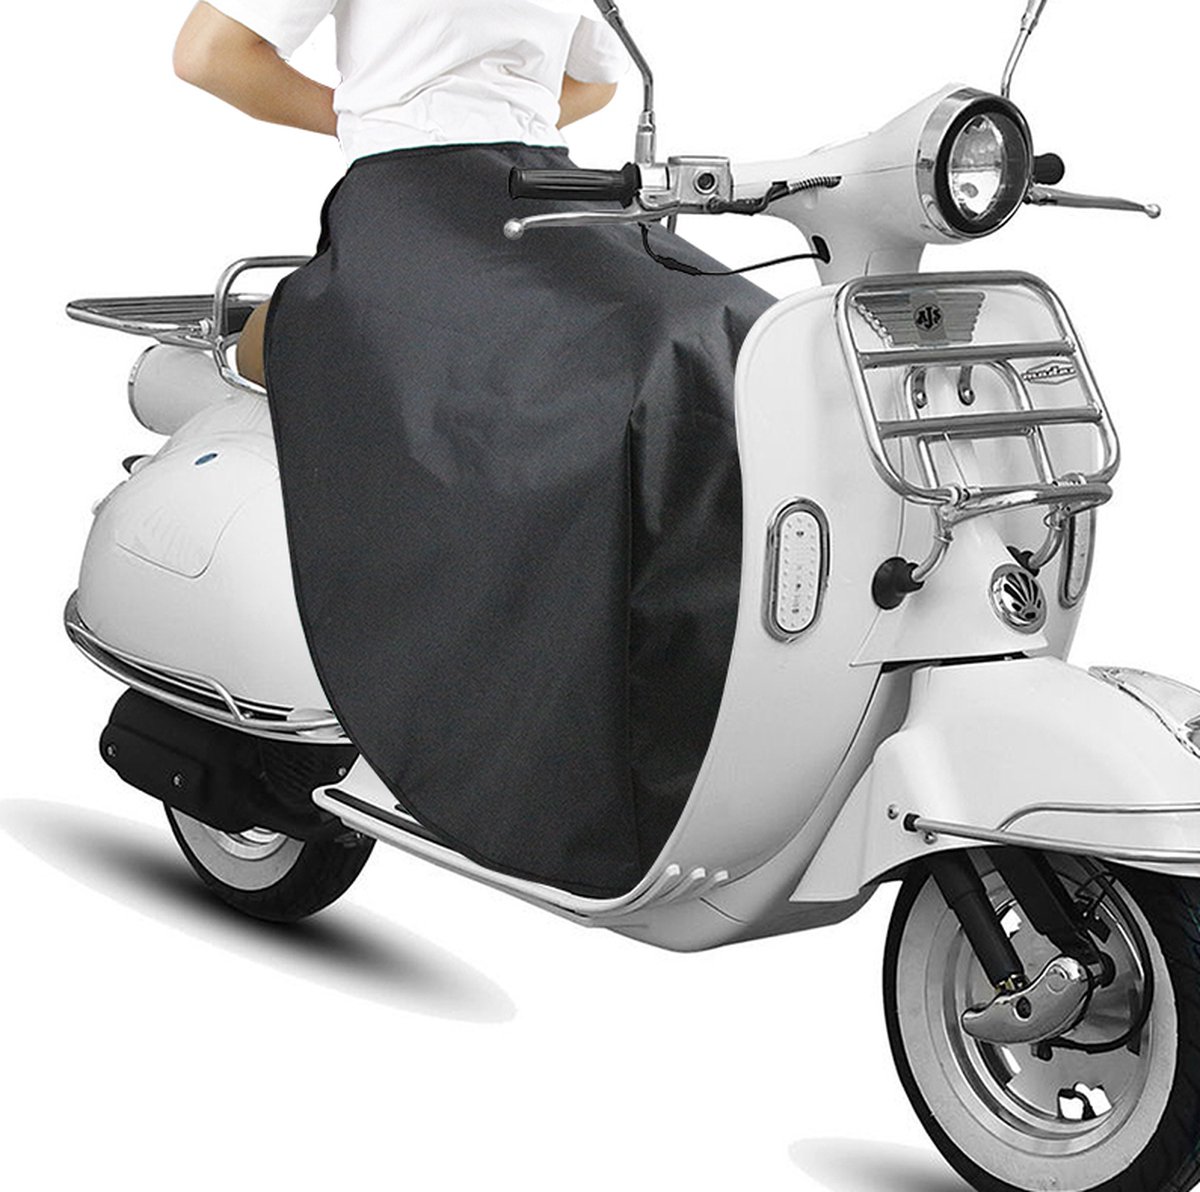 Scooter Beenkleed - beenkleed scooter universeel - Waterdicht - Winddicht - been deken - deken voor op de scooter & motor